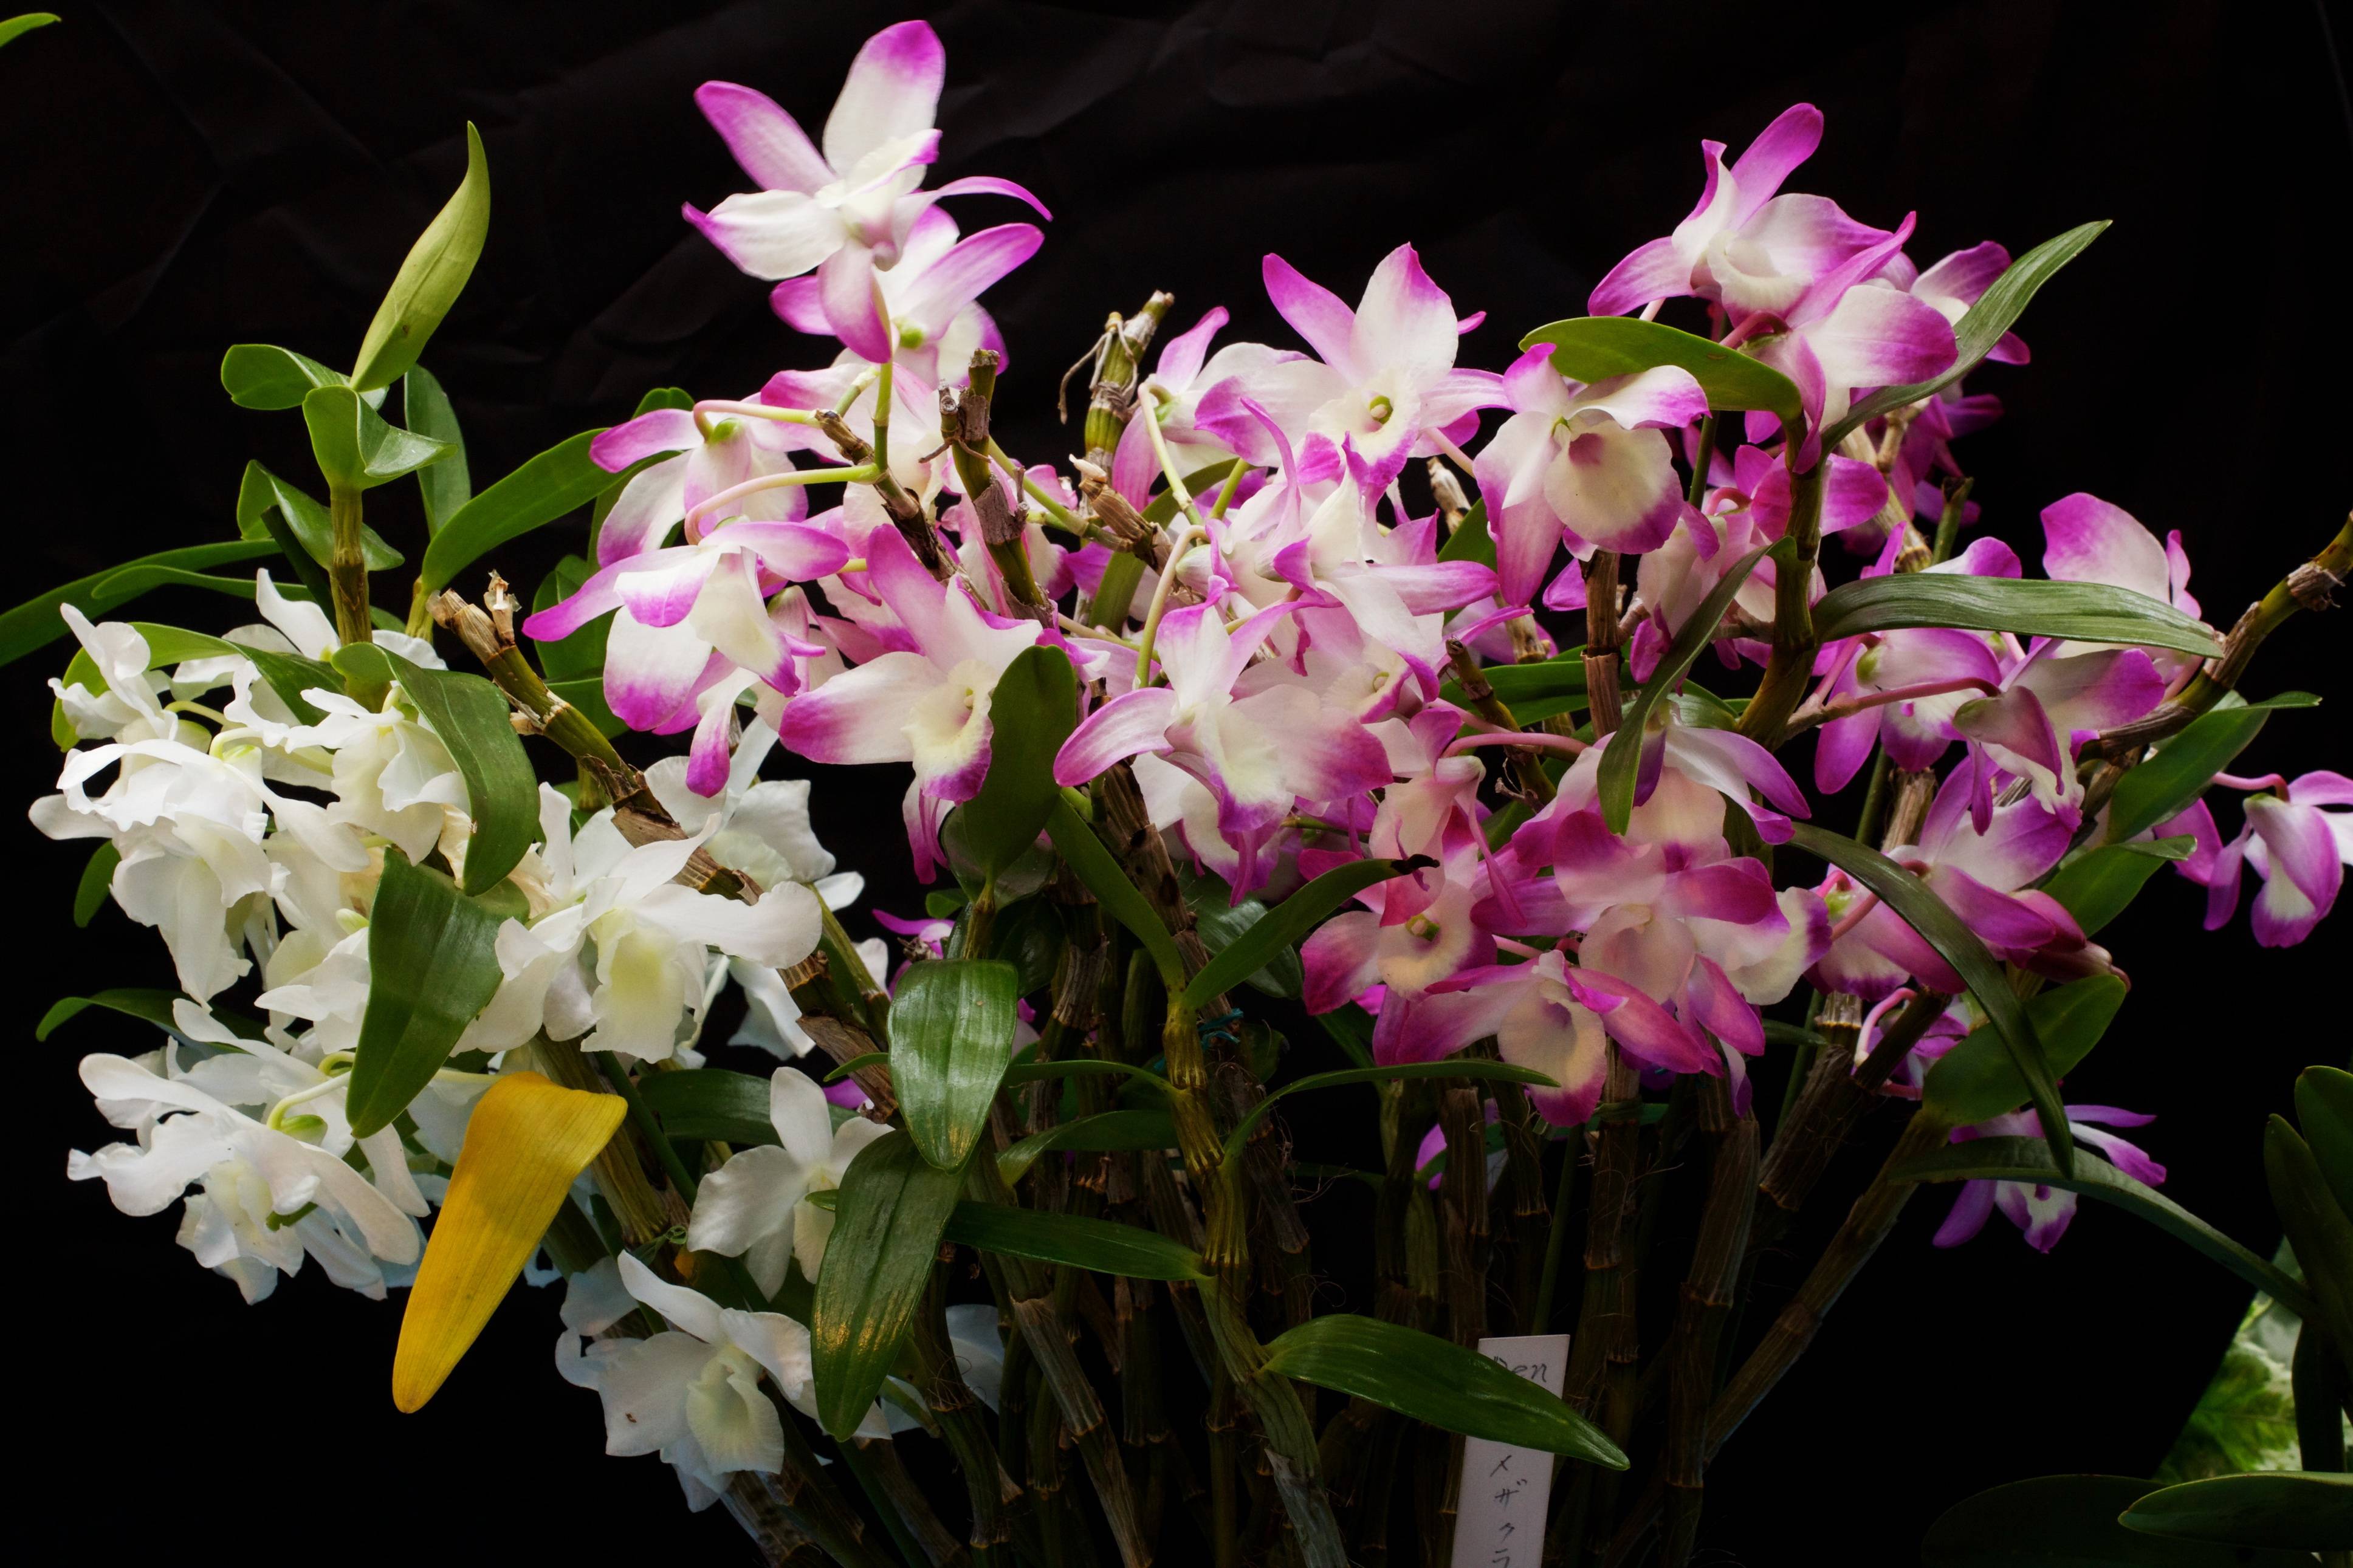 25 видов орхидей с фото и названиями - разновидности по классам, сорту, цвету и форме листьев